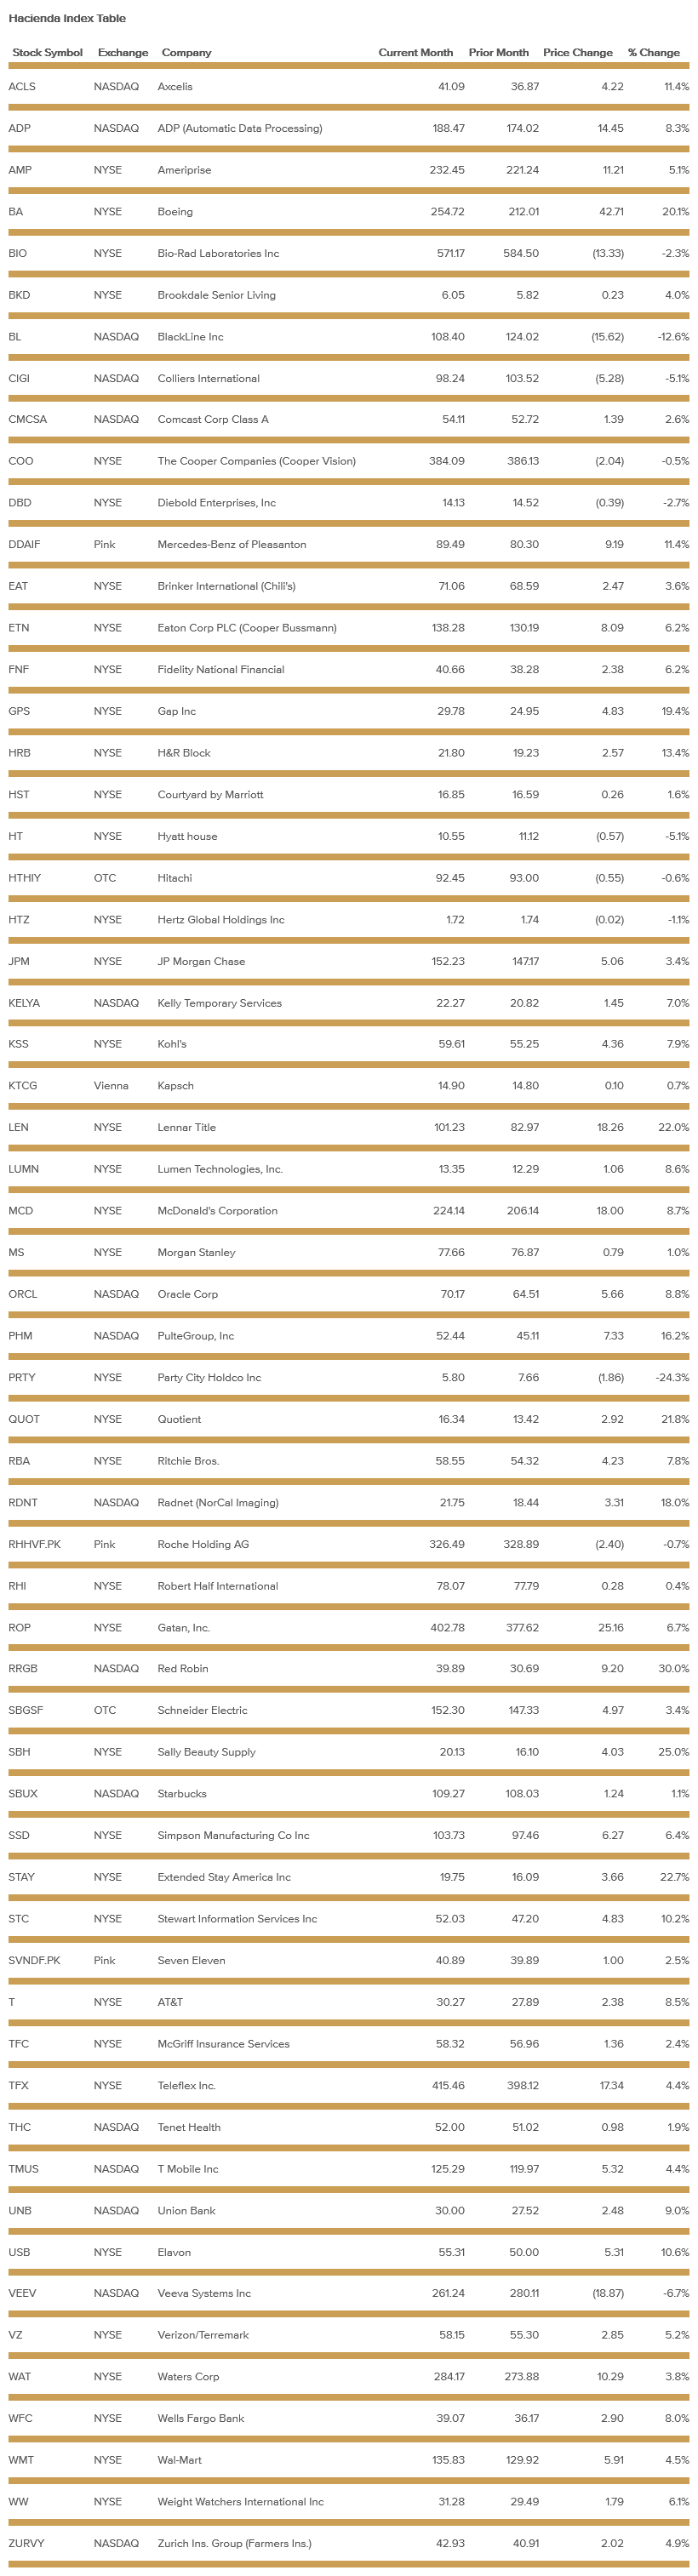 hacienda-index-table-april-2021.png